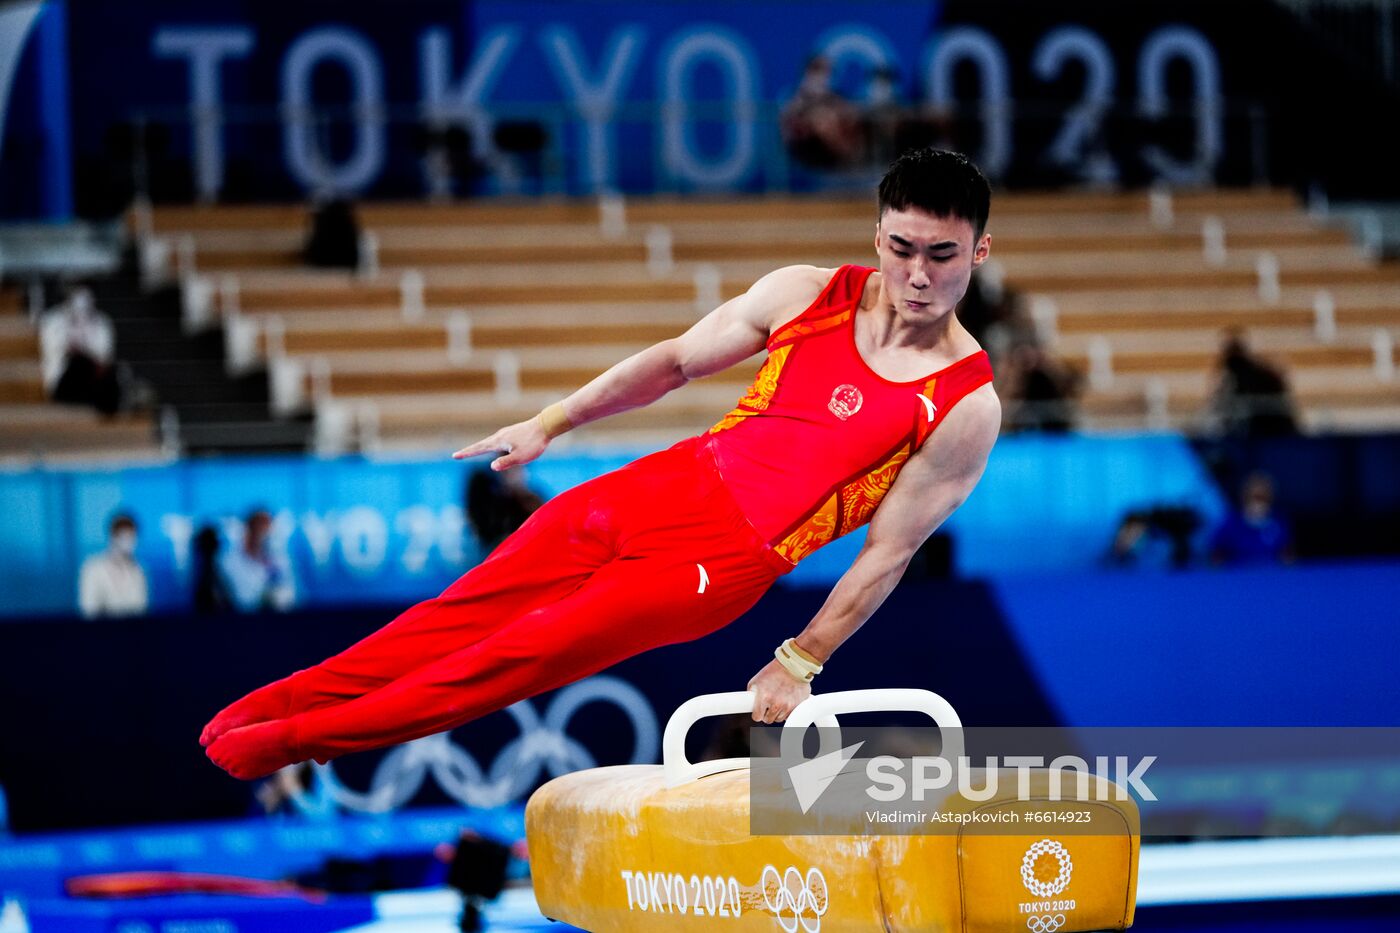 Japan Olympics 2020 Artistic Gymnastics Men Pommel Horse